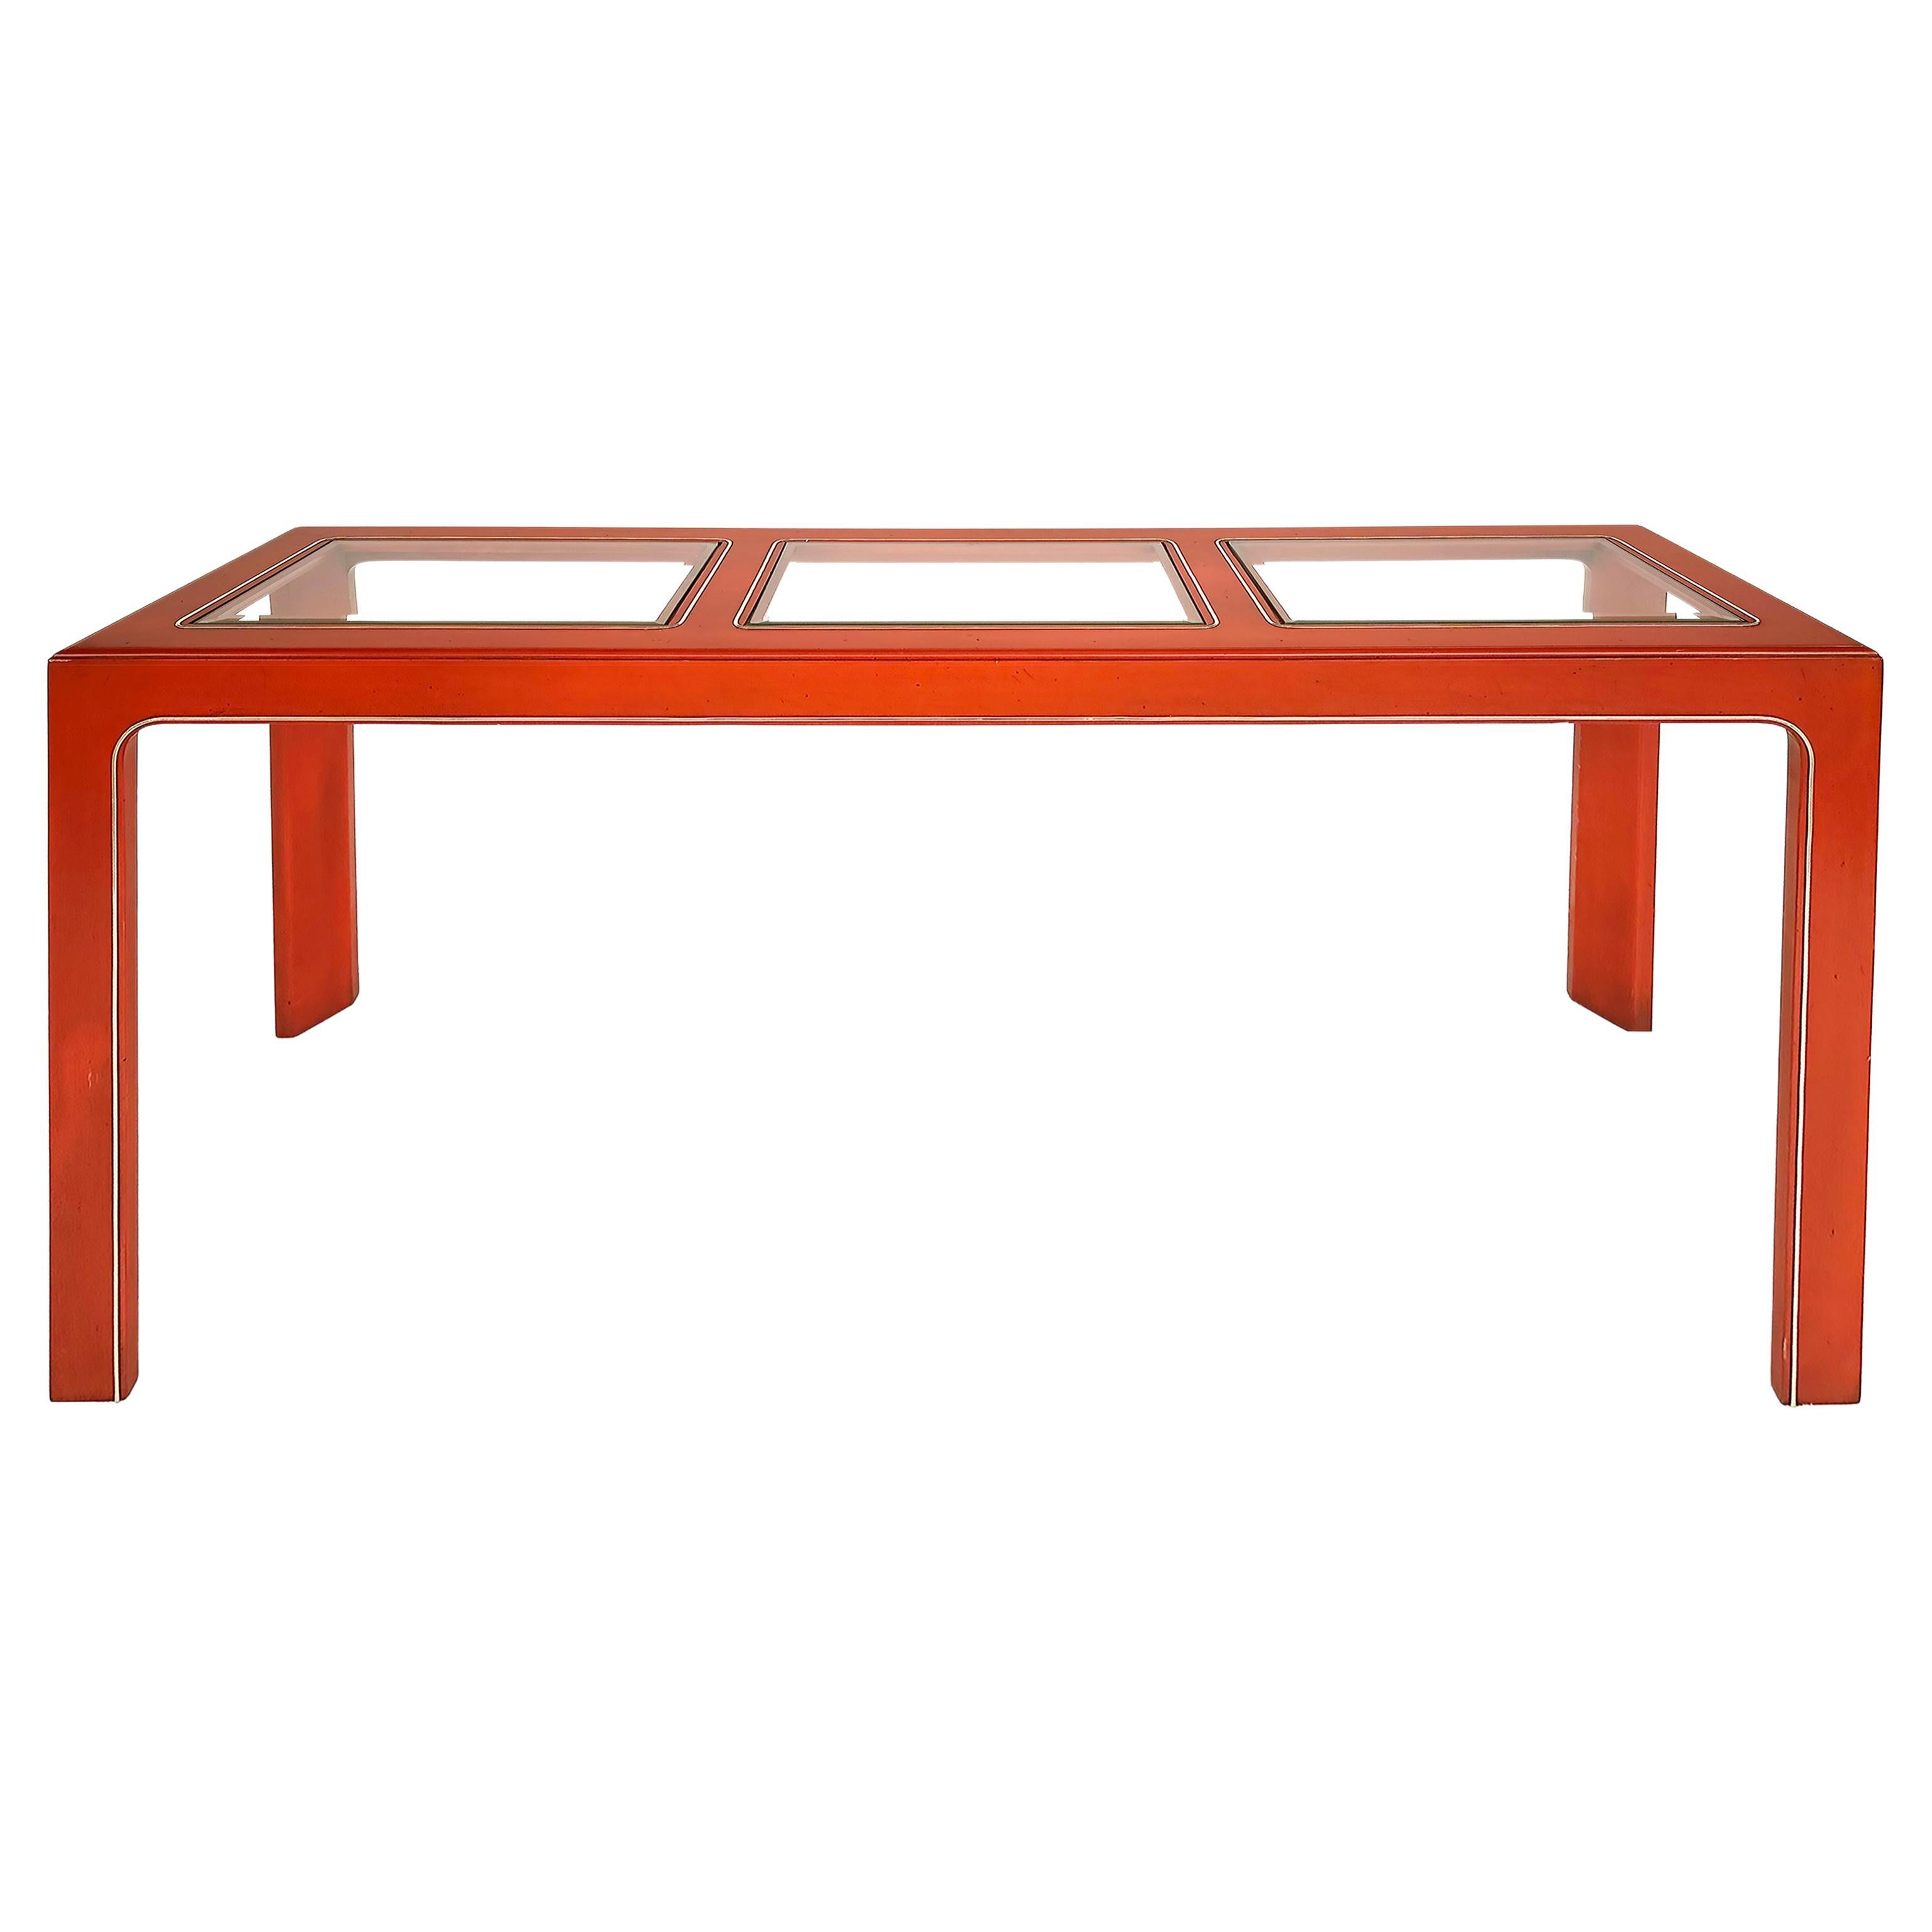 Table console laquée orange avec plateaux en verre biseauté encastrés